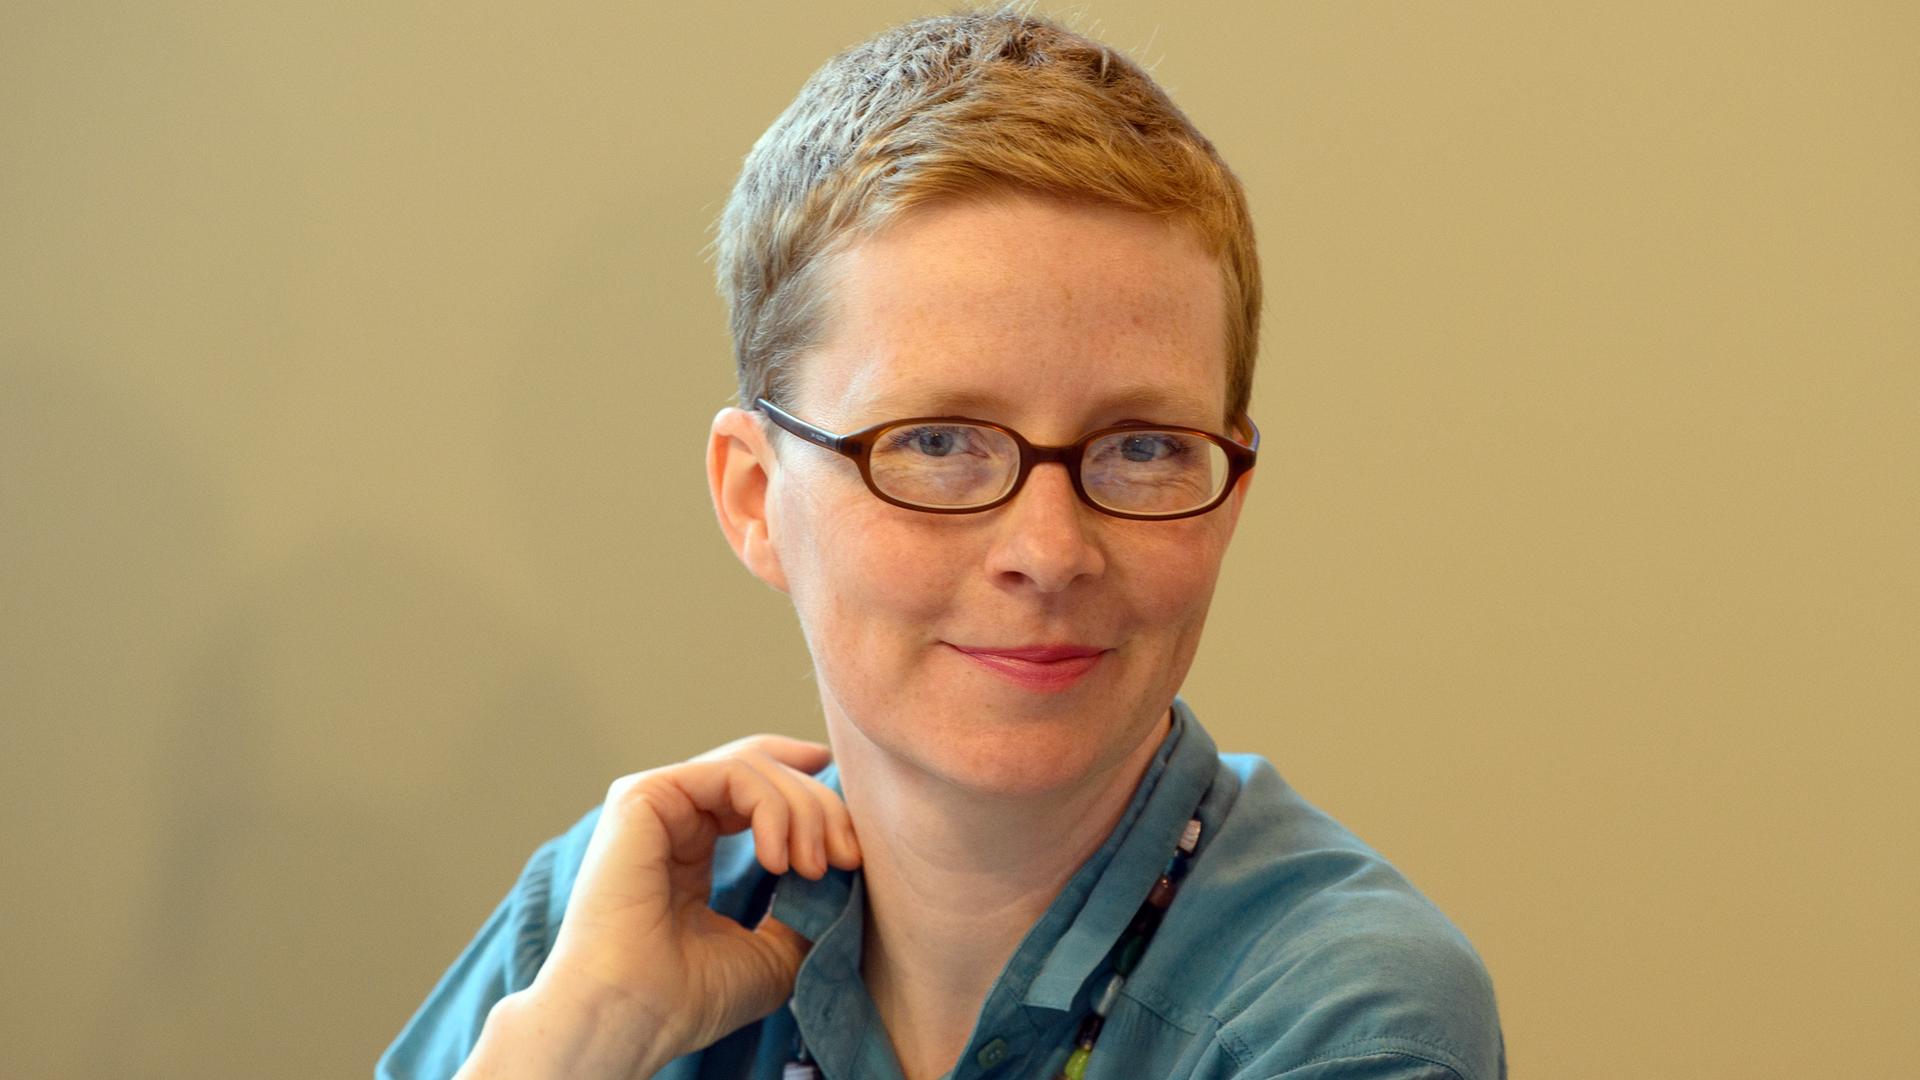 Die Schriftstellerin Judith Zander lächelt mit Brille und kurzen Haaren in die Kamera.